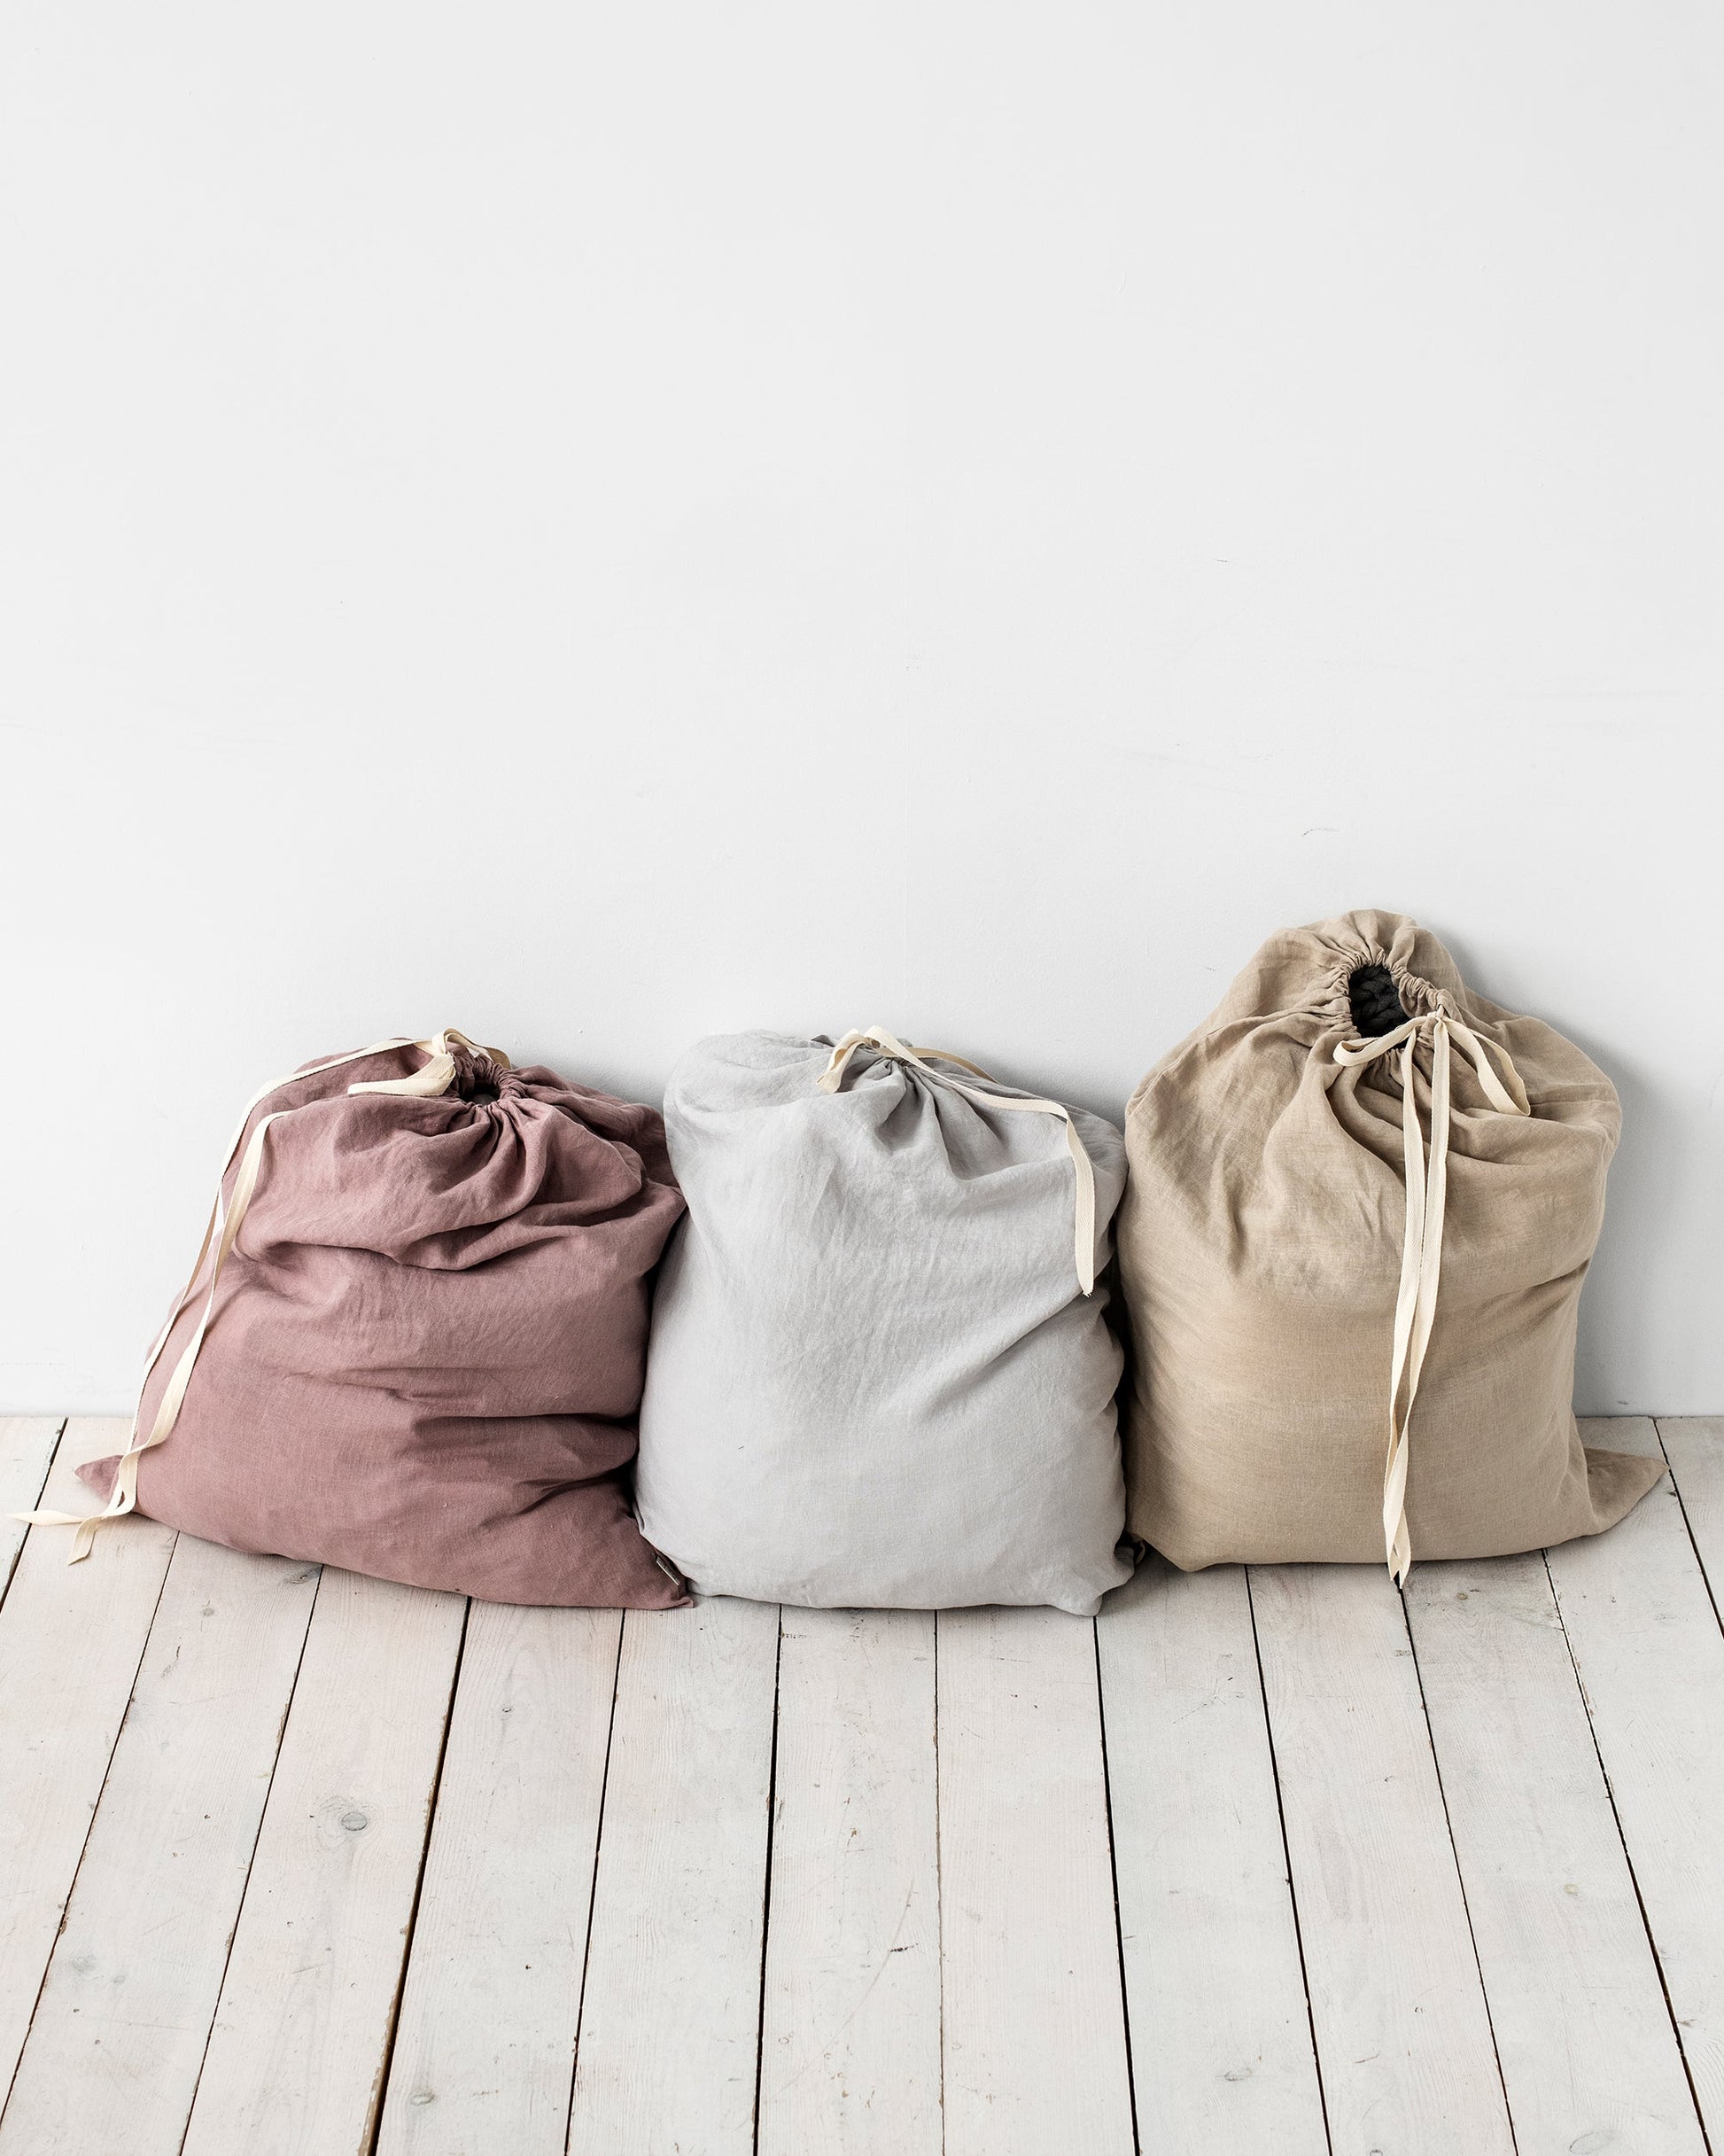 Linen laundry bag in Natural linen - MagicLinen